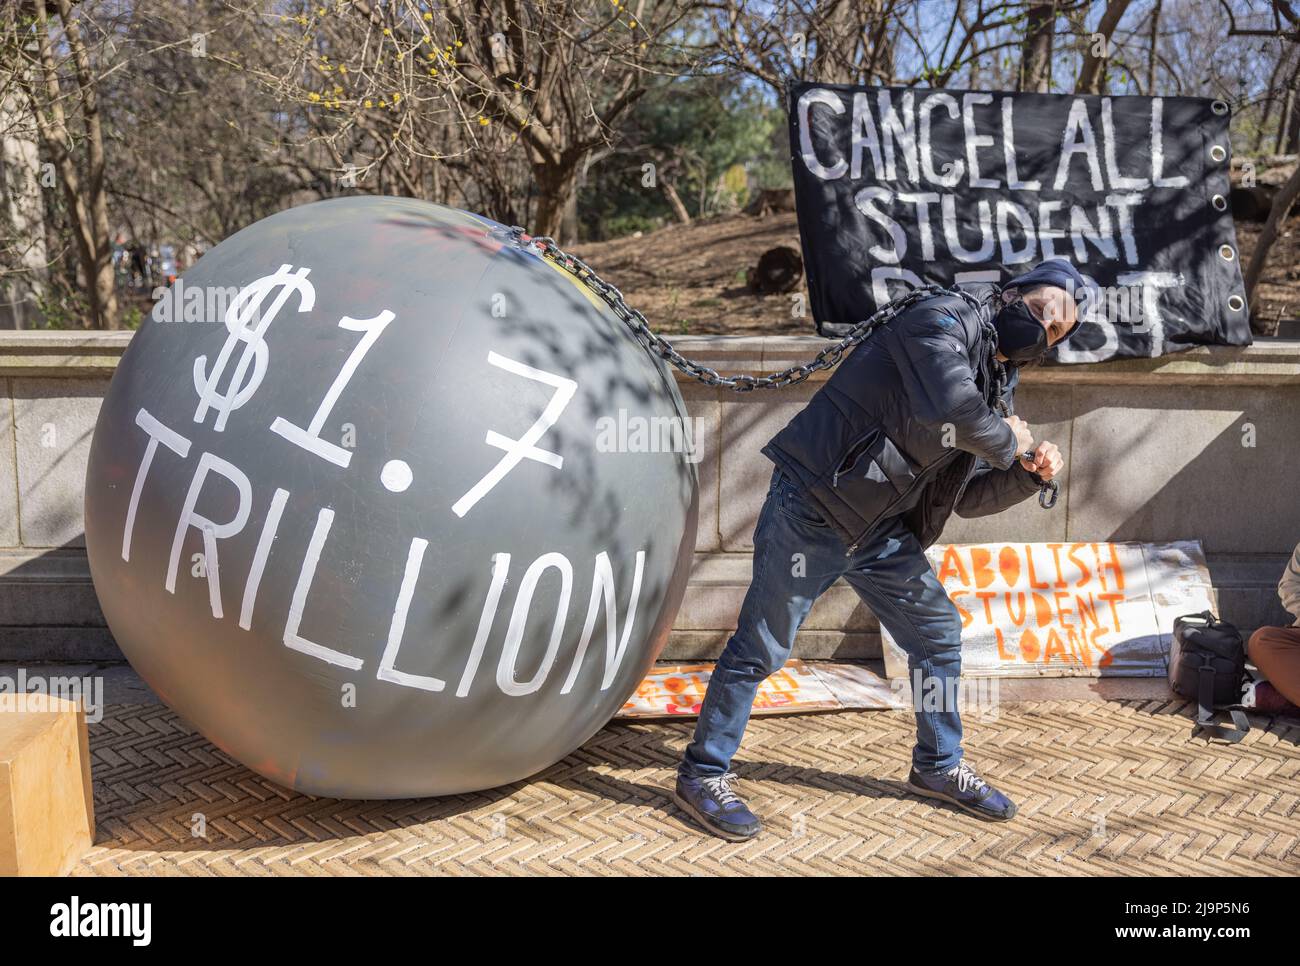 BROOKLYN, New York – 3. April 2021: Ein Demonstranten protestiert in der Nähe des Grand Army Plaza während einer Kundgebung, um die Schulden von Studentendarlehen zu streichen. Stockfoto